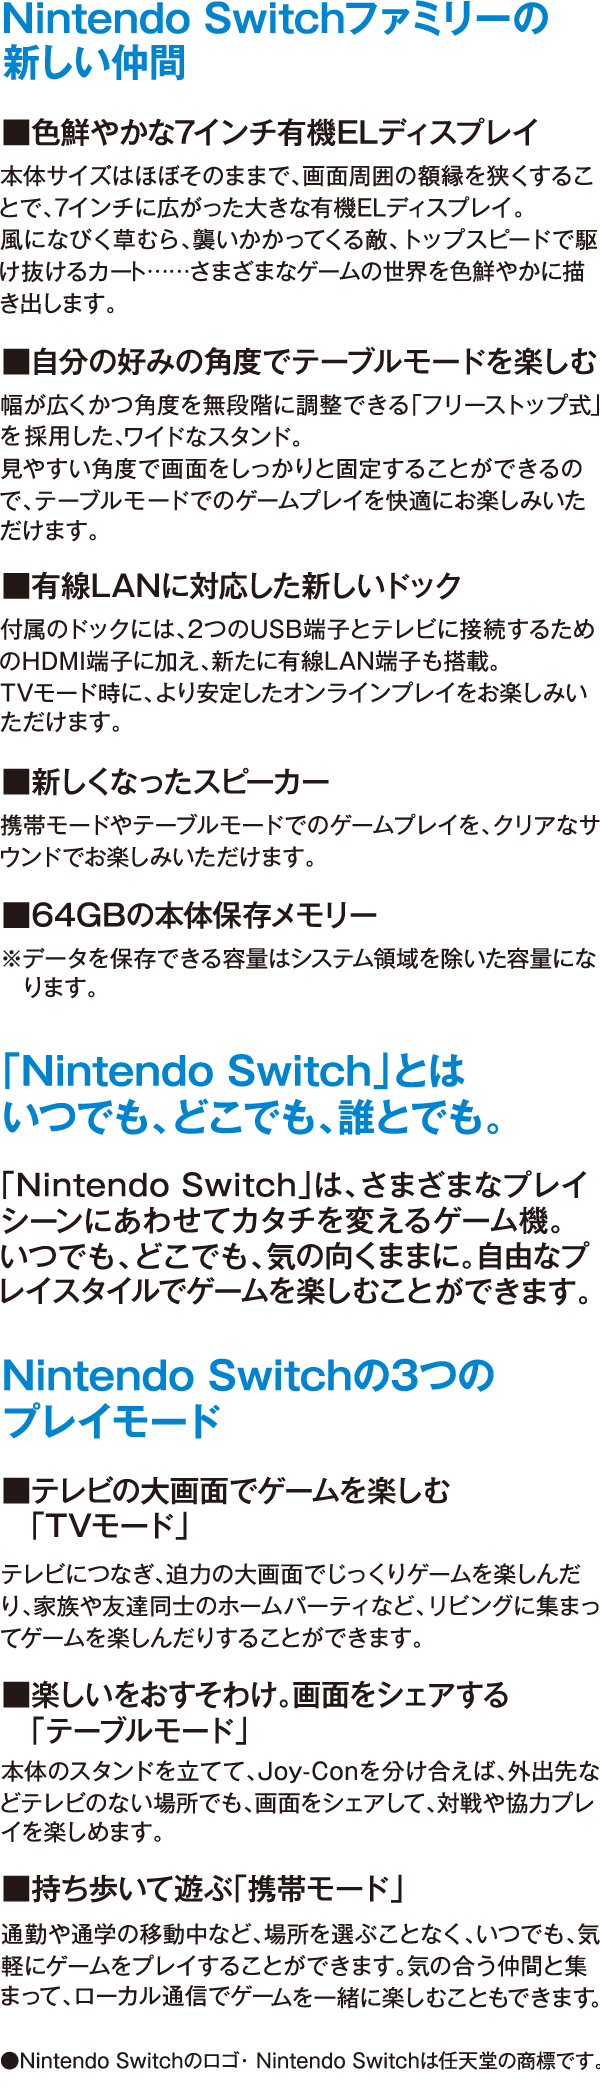 Nintendo Switchファミリーの新しい仲間 ■色鮮やかな7インチ有機ELディスプレイ 本体サイズはほぼそのままで、画面周囲の額縁を狭くすることで、7インチに広がった大きな有機ELディスプレイ。風になびく草むら、襲いかかってくる敵、トップスピードで駆け抜けるカート……さまざまなゲームの世界を色鮮やかに描き出します。 ■自分の好みの角度でテーブルモードを楽しむ 幅が広くかつ角度を無段階に調整できる「フリーストップ式」を採用した、ワイドなスタンド。見やすい角度で画面をしっかりと固定することができるので、テーブルモードでのゲームプレイを快適にお楽しみいただけます。 ■有線LANに対応した新しいドック 付属のドックには、2つのUSB端子とテレビに接続するためのHDMI端子に加え、新たに有線LAN端子も搭載。TVモード時に、より安定したオンラインプレイをお楽しみいただけます。 ■新しくなったスピーカー 携帯モードやテーブルモードでのゲームプレイを、クリアなサウンドでお楽しみいただけます。■64GBの本体保存メモリー ※データを保存できる容量はシステム領域を除いた容量になります。 「Nintendo Switch」とは いつでも、どこでも、誰とでも。 「Nintendo Switch」は、さまざまなプレイシーンにあわせてカタチを変えるゲーム機。 いつでも、どこでも、気の向くままに。自由なプレイスタイルでゲームを楽しむことができます。 Nintendo Switchの3つのプレイモード ■テレビの大画面でゲームを楽しむ「TVモード」 テレビにつなぎ、迫力の大画面でじっくりゲームを楽しんだり、家族や友達同士のホームパーティなど、リビングに集まってゲームを楽しんだりすることができます。 ■楽しいをおすそわけ。画面をシェアする「テーブルモード」 本体のスタンドを立てて、Joy-Conを分け合えば、外出先などテレビのない場所でも、画面をシェアして、対戦や協力プレイを楽しめます。 ■持ち歩いて遊ぶ「携帯モード」 通勤や通学の移動中など、場所を選ぶことなく、いつでも、気軽にゲームをプレイすることができます。気の合う仲間と集まって、ローカル通信でゲームを一緒に楽しむこともできます。 ●Nintendo Switchのロゴ・ Nintendo Switchは任天堂の商標です。